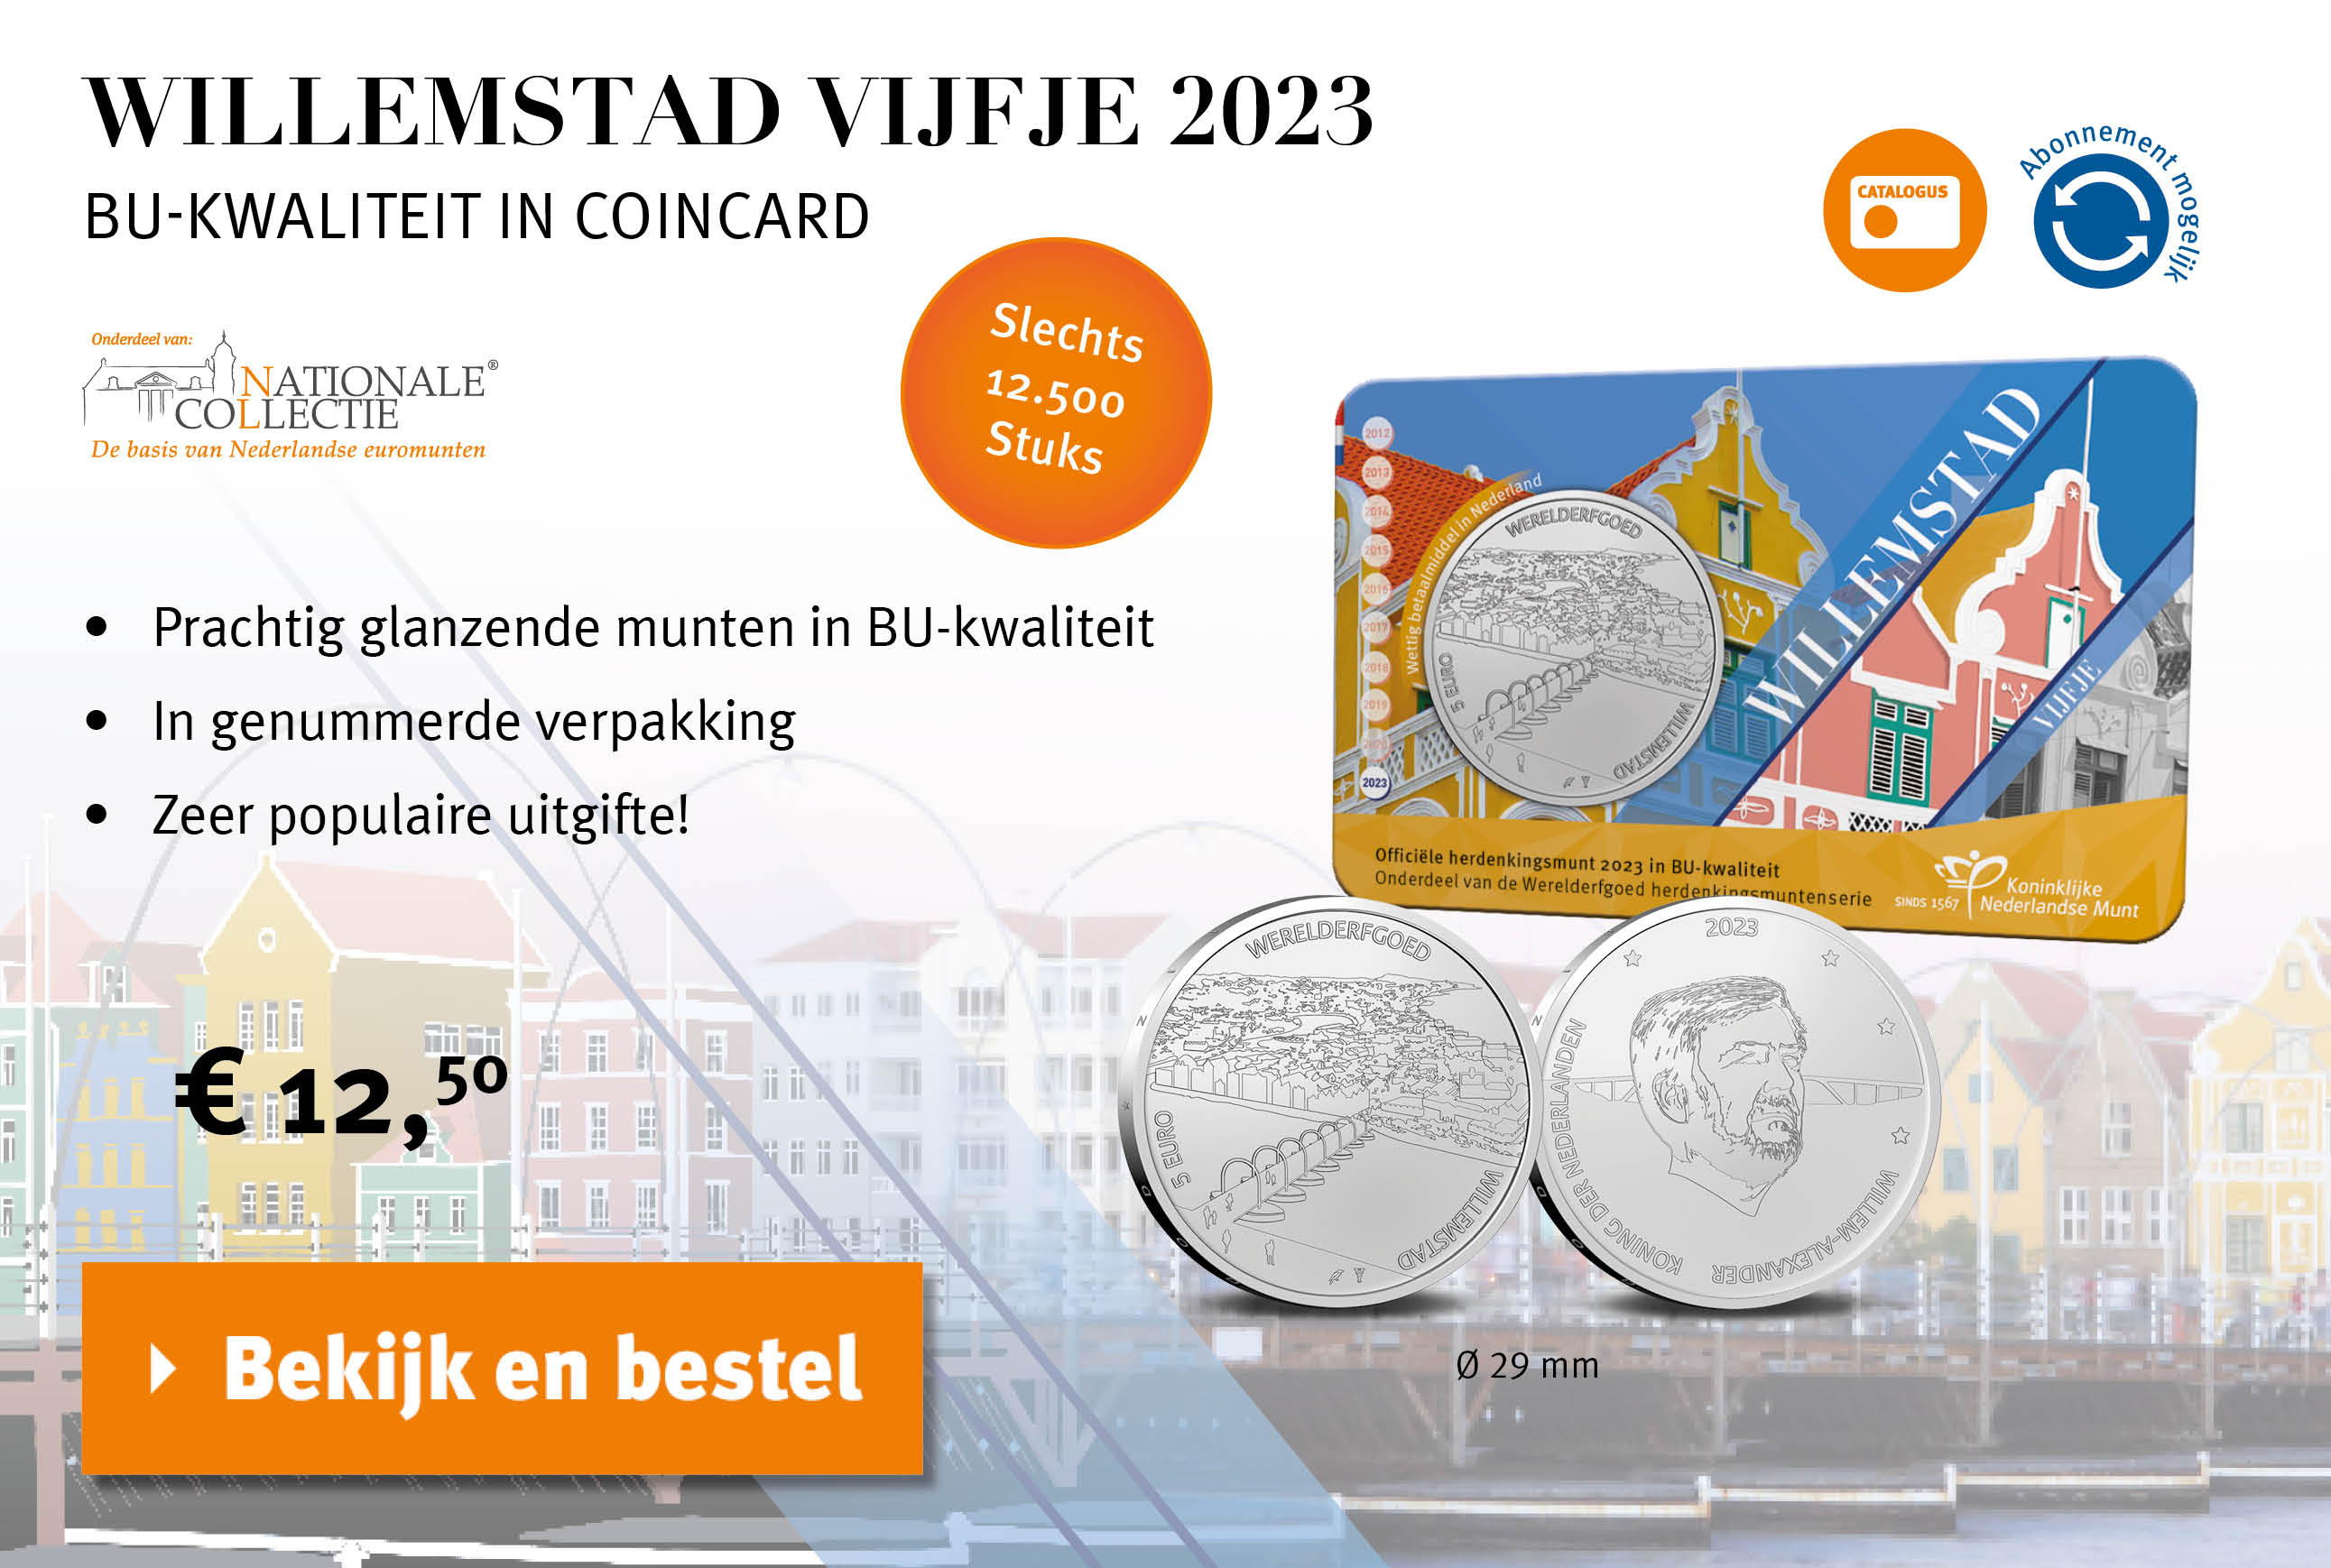 Bekijk en bestel: Willemstad Vijfje BU in Coincard